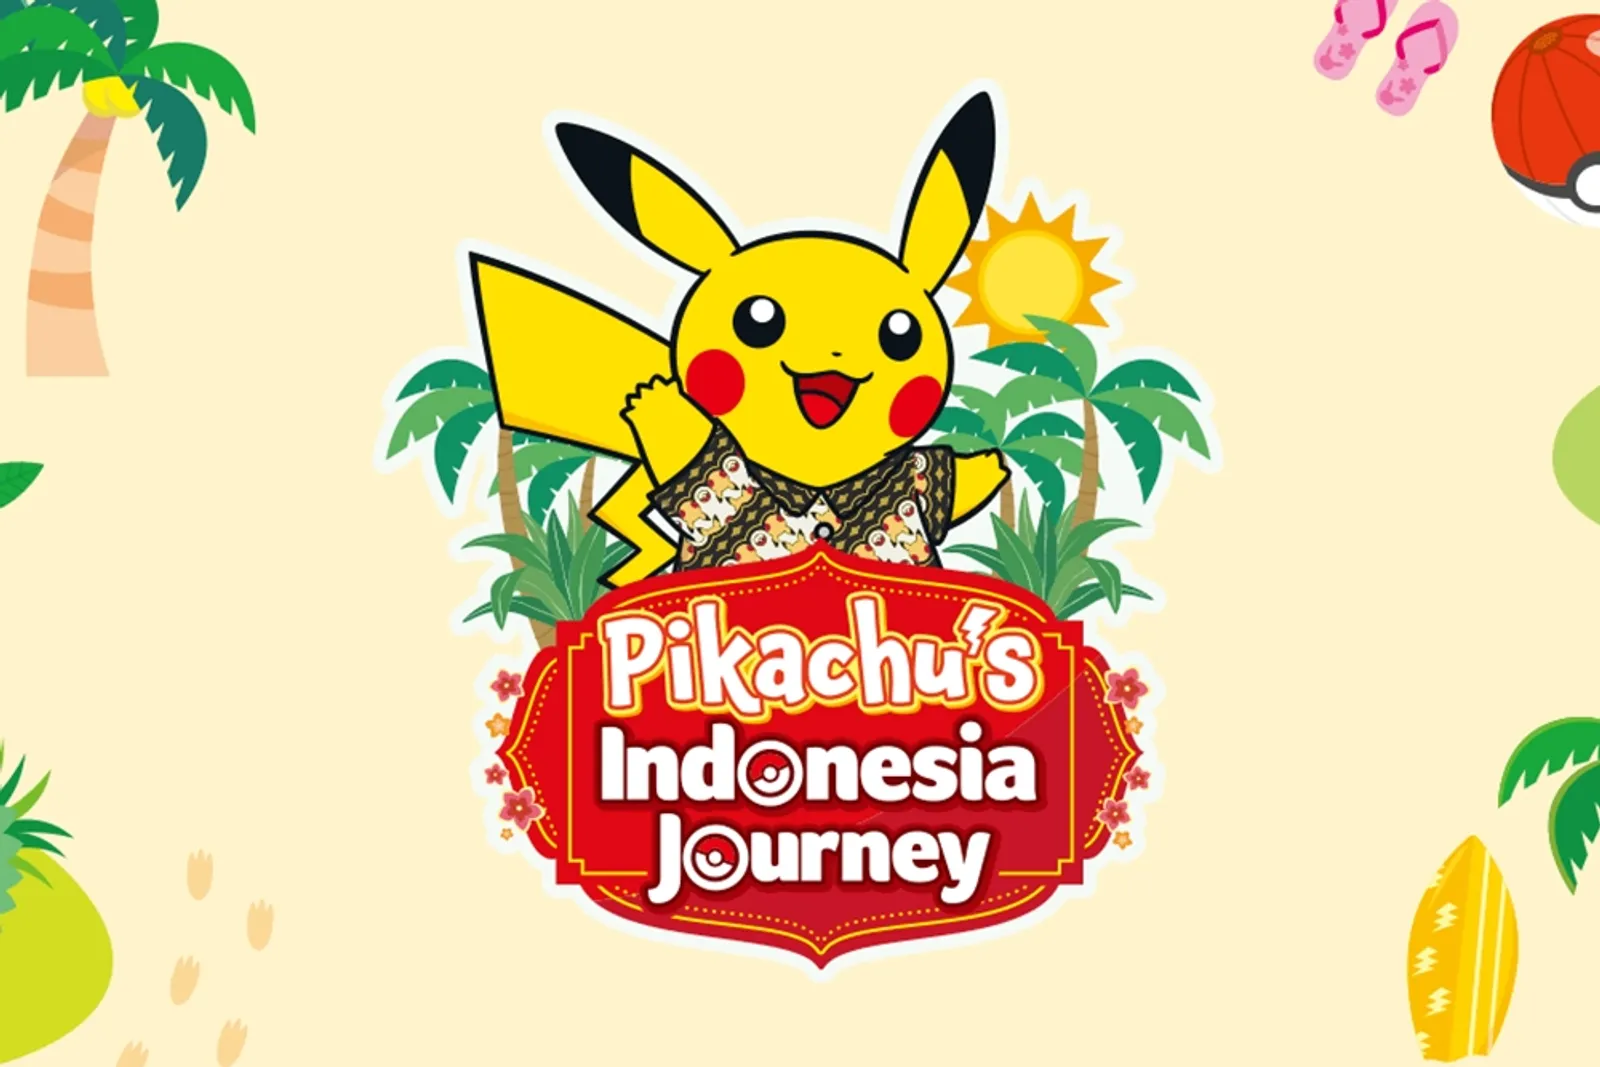 Pikachu's Indonesia Journey Segera Hadir di Kota Surabaya